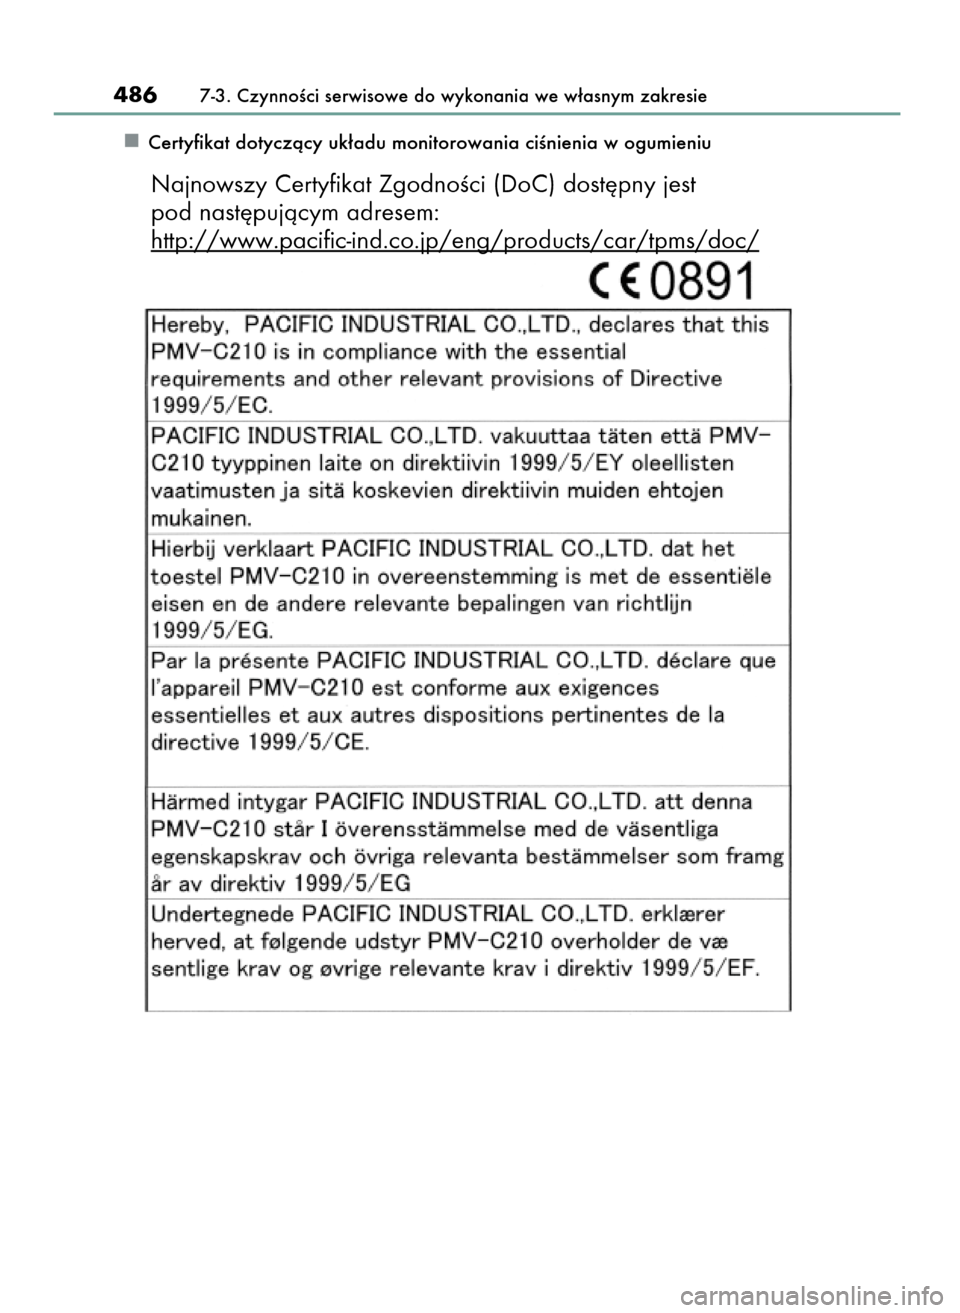 Lexus CT200h 2017  Instrukcja Obsługi (in Polish) Certyfikat dotyczàcy uk∏adu monitorowania ciÊnienia w ogumieniu
4867-3. CzynnoÊci serwisowe do wykonania we w∏asnym zakresie
Najnowszy Certyfikat ZgodnoÊci (DoC) dost´pny jest 
pod nast´puj�